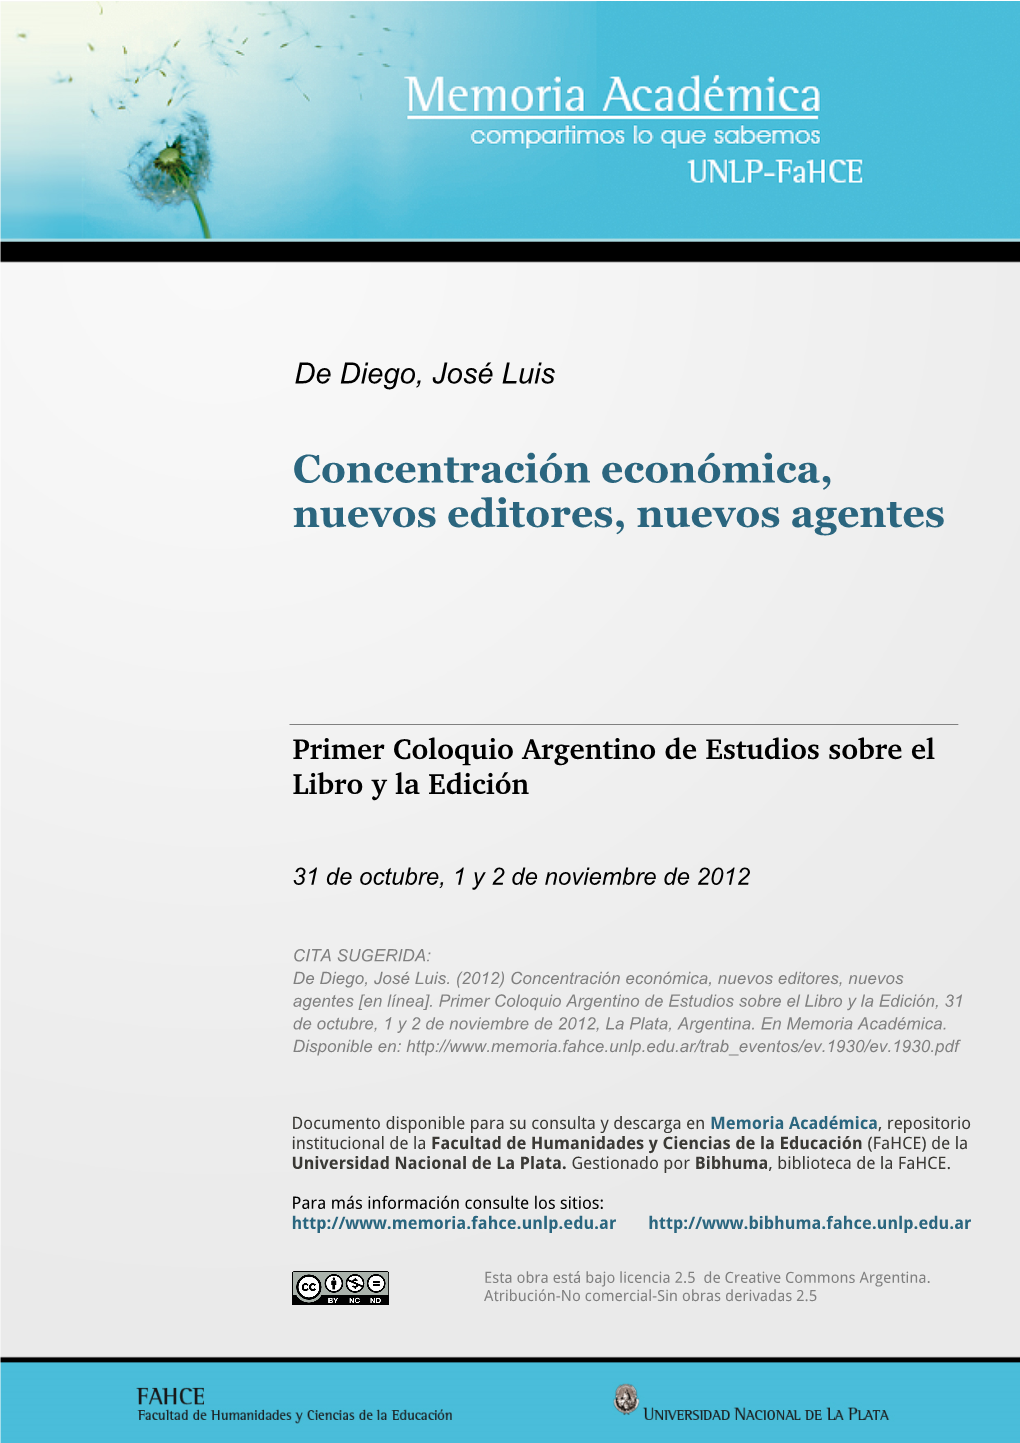 Concentración Económica, Nuevos Editores, Nuevos Agentes José Luis De Diego Idihcs (Unlp-Conicet)